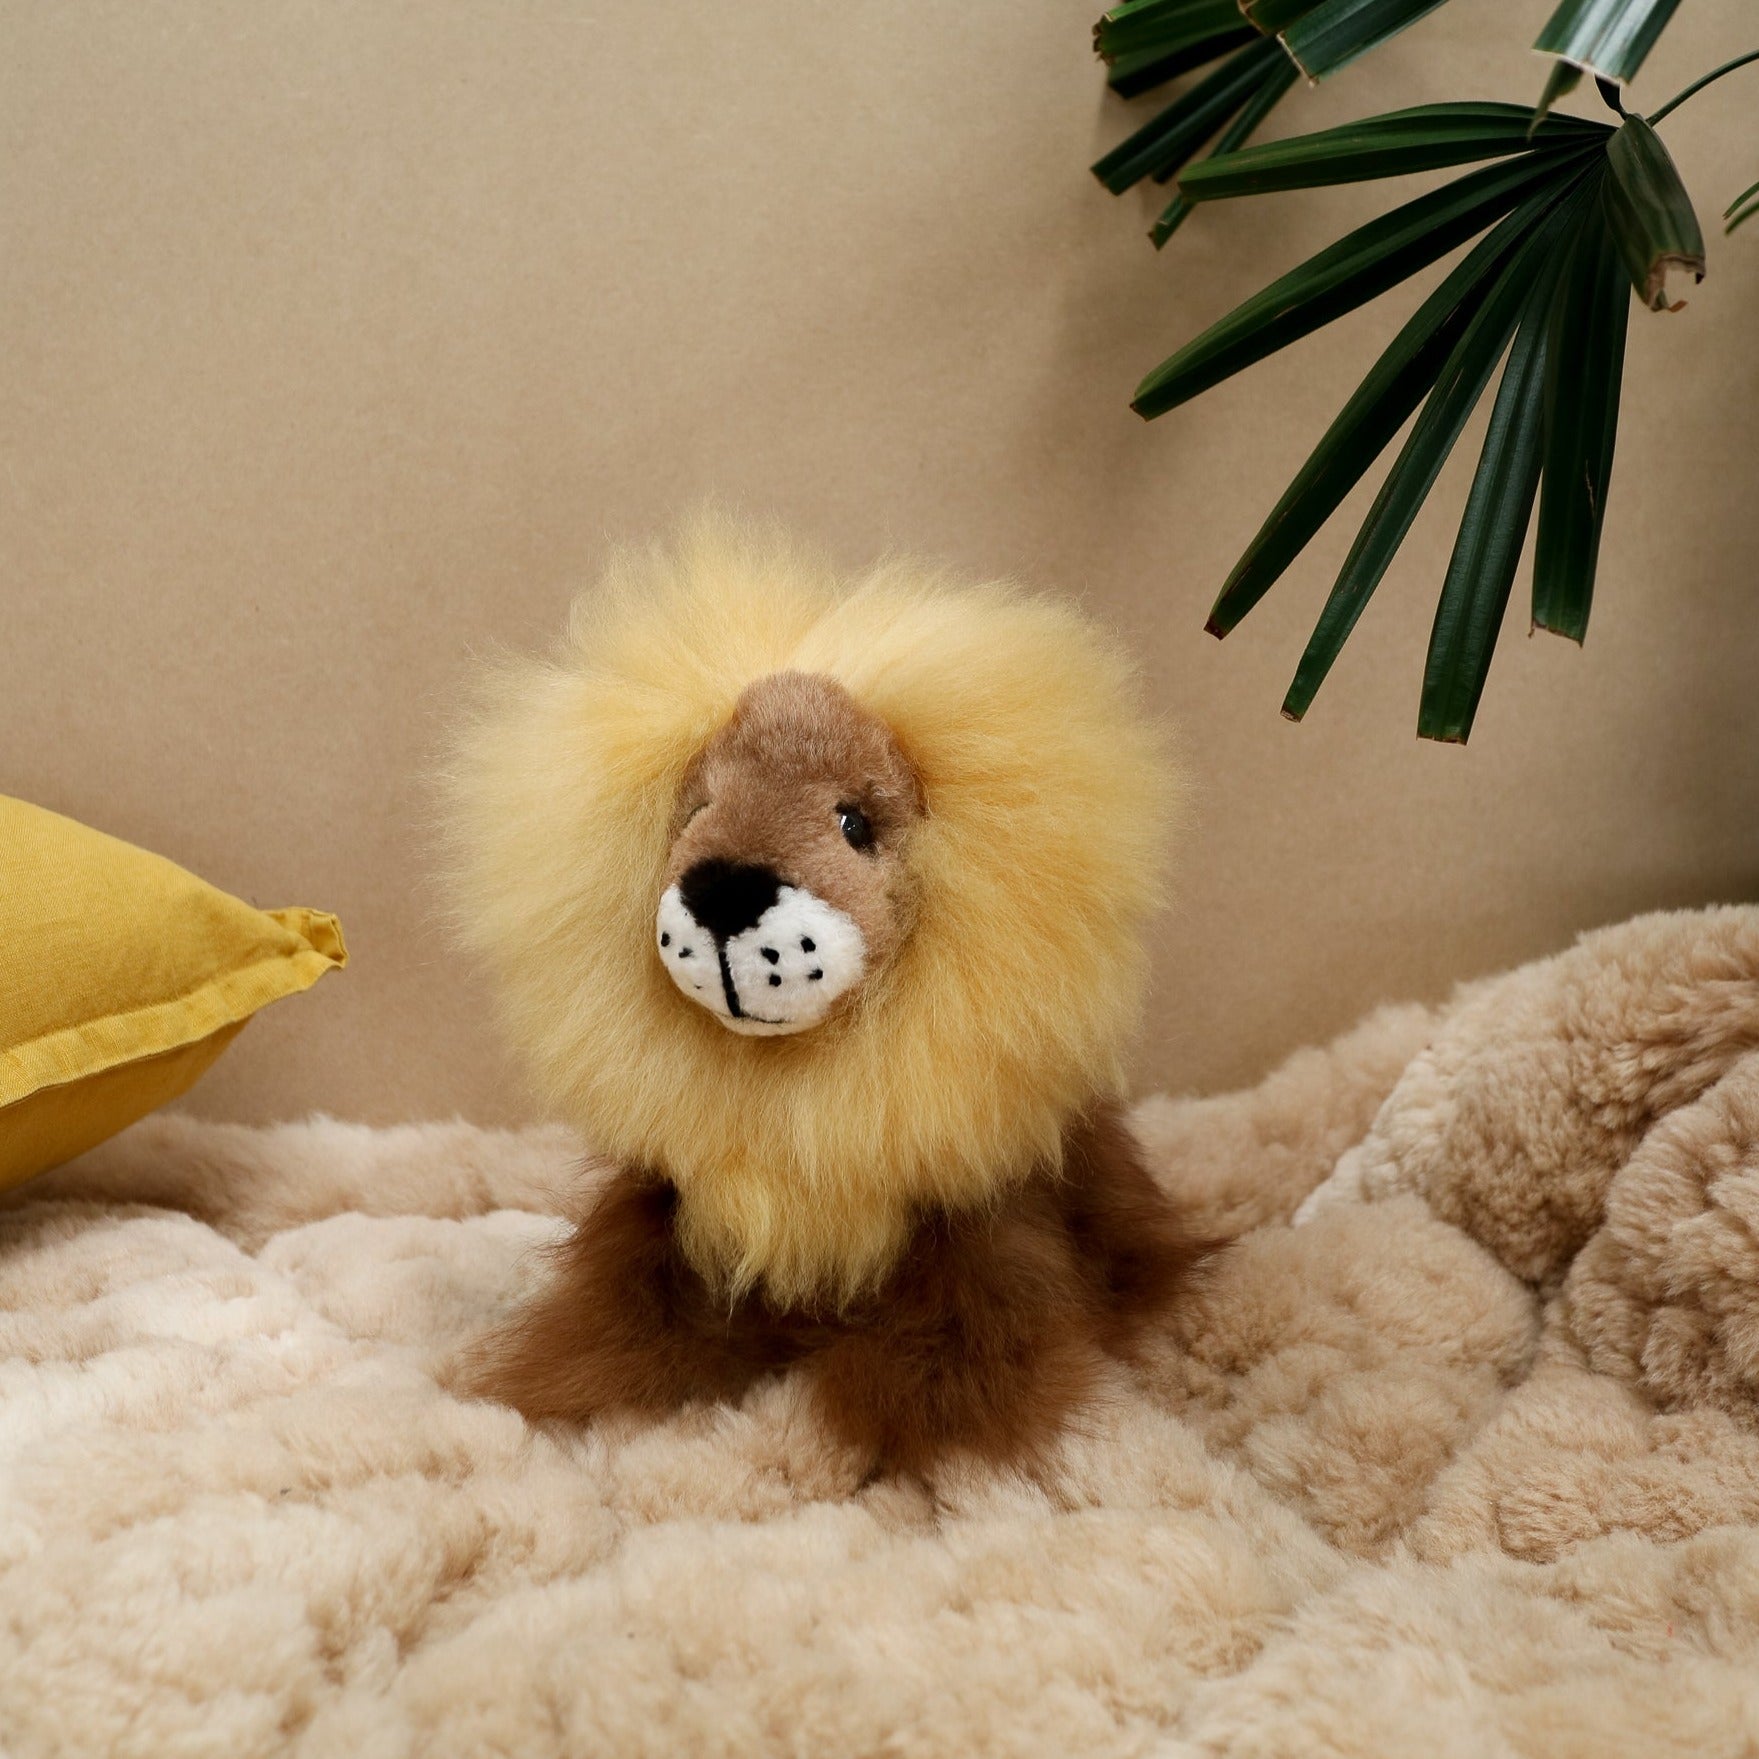 toy lion plush toy alpaca wool australia#colour_brown